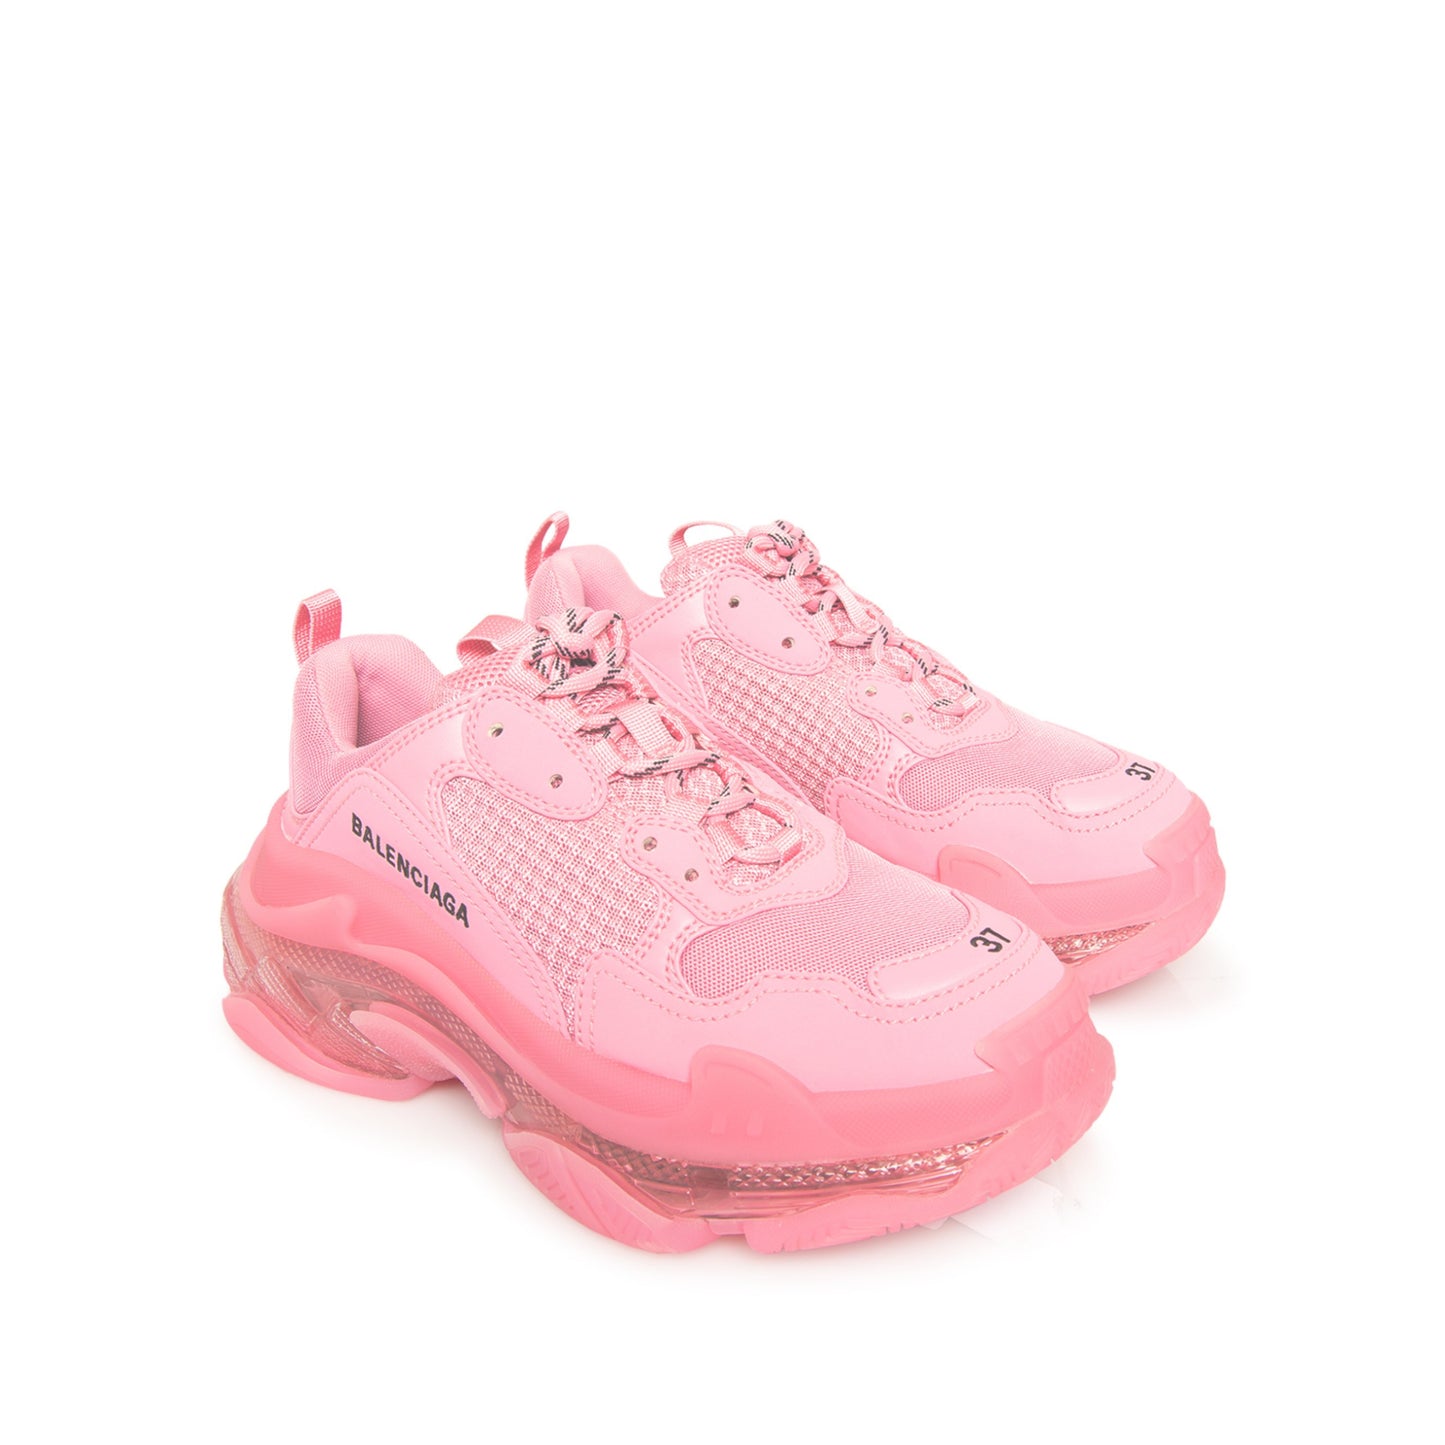 Triple S Clear Sole Sneaker in Pink